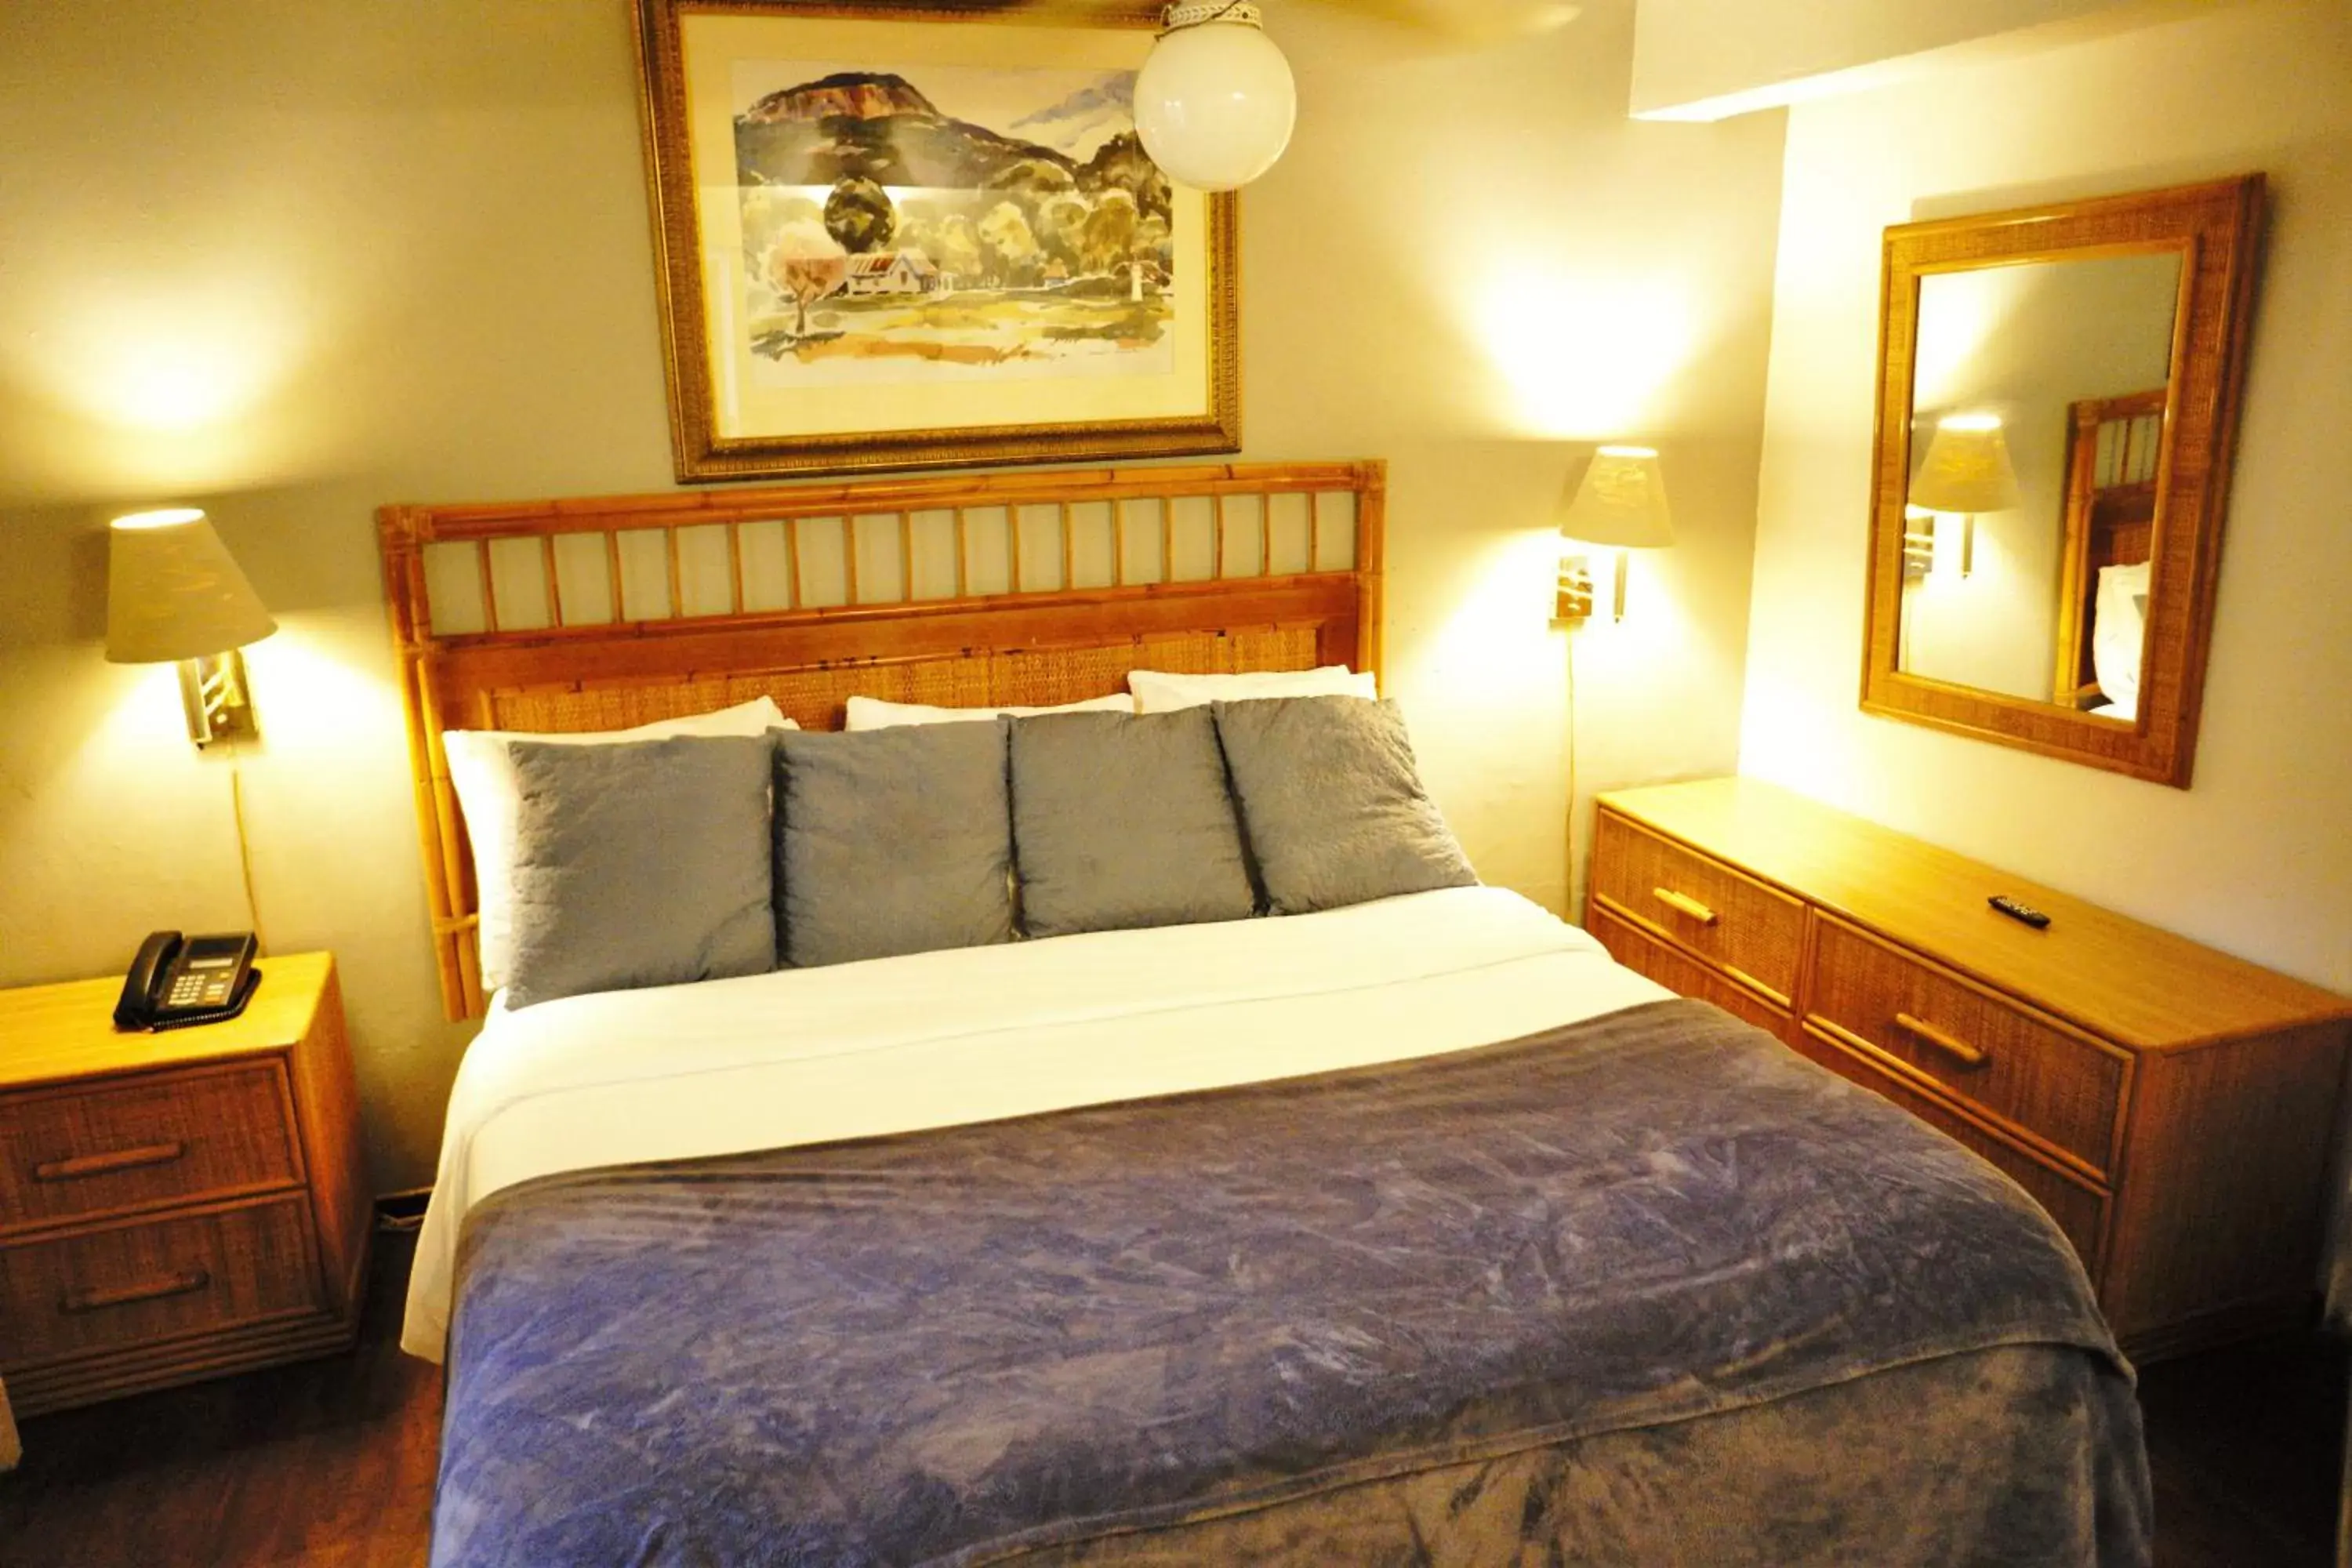 Bed, Room Photo in Casa del Caribe Inn